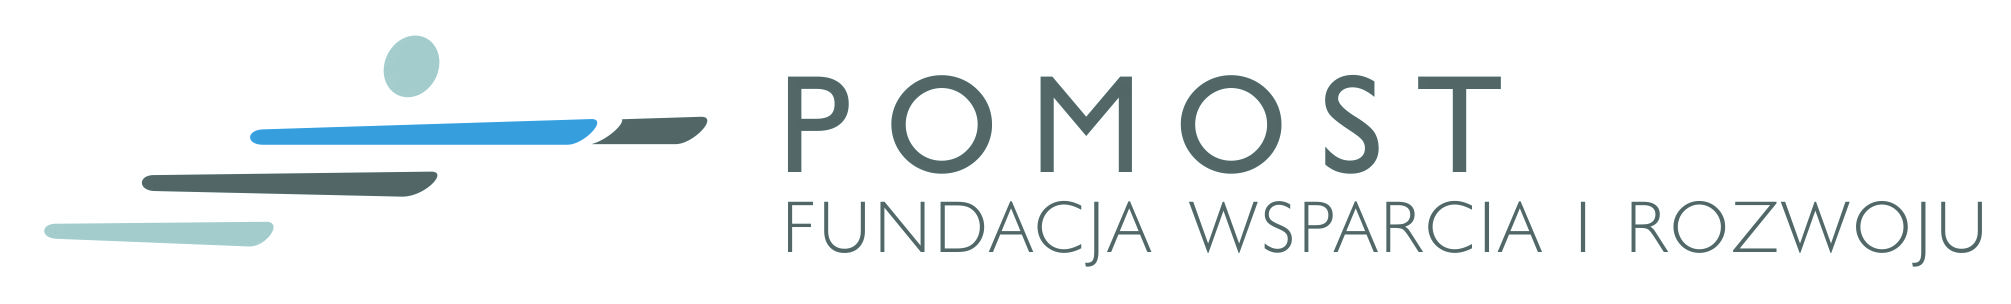 Fundacja Wsparcia i Rozwoju "POMOST"